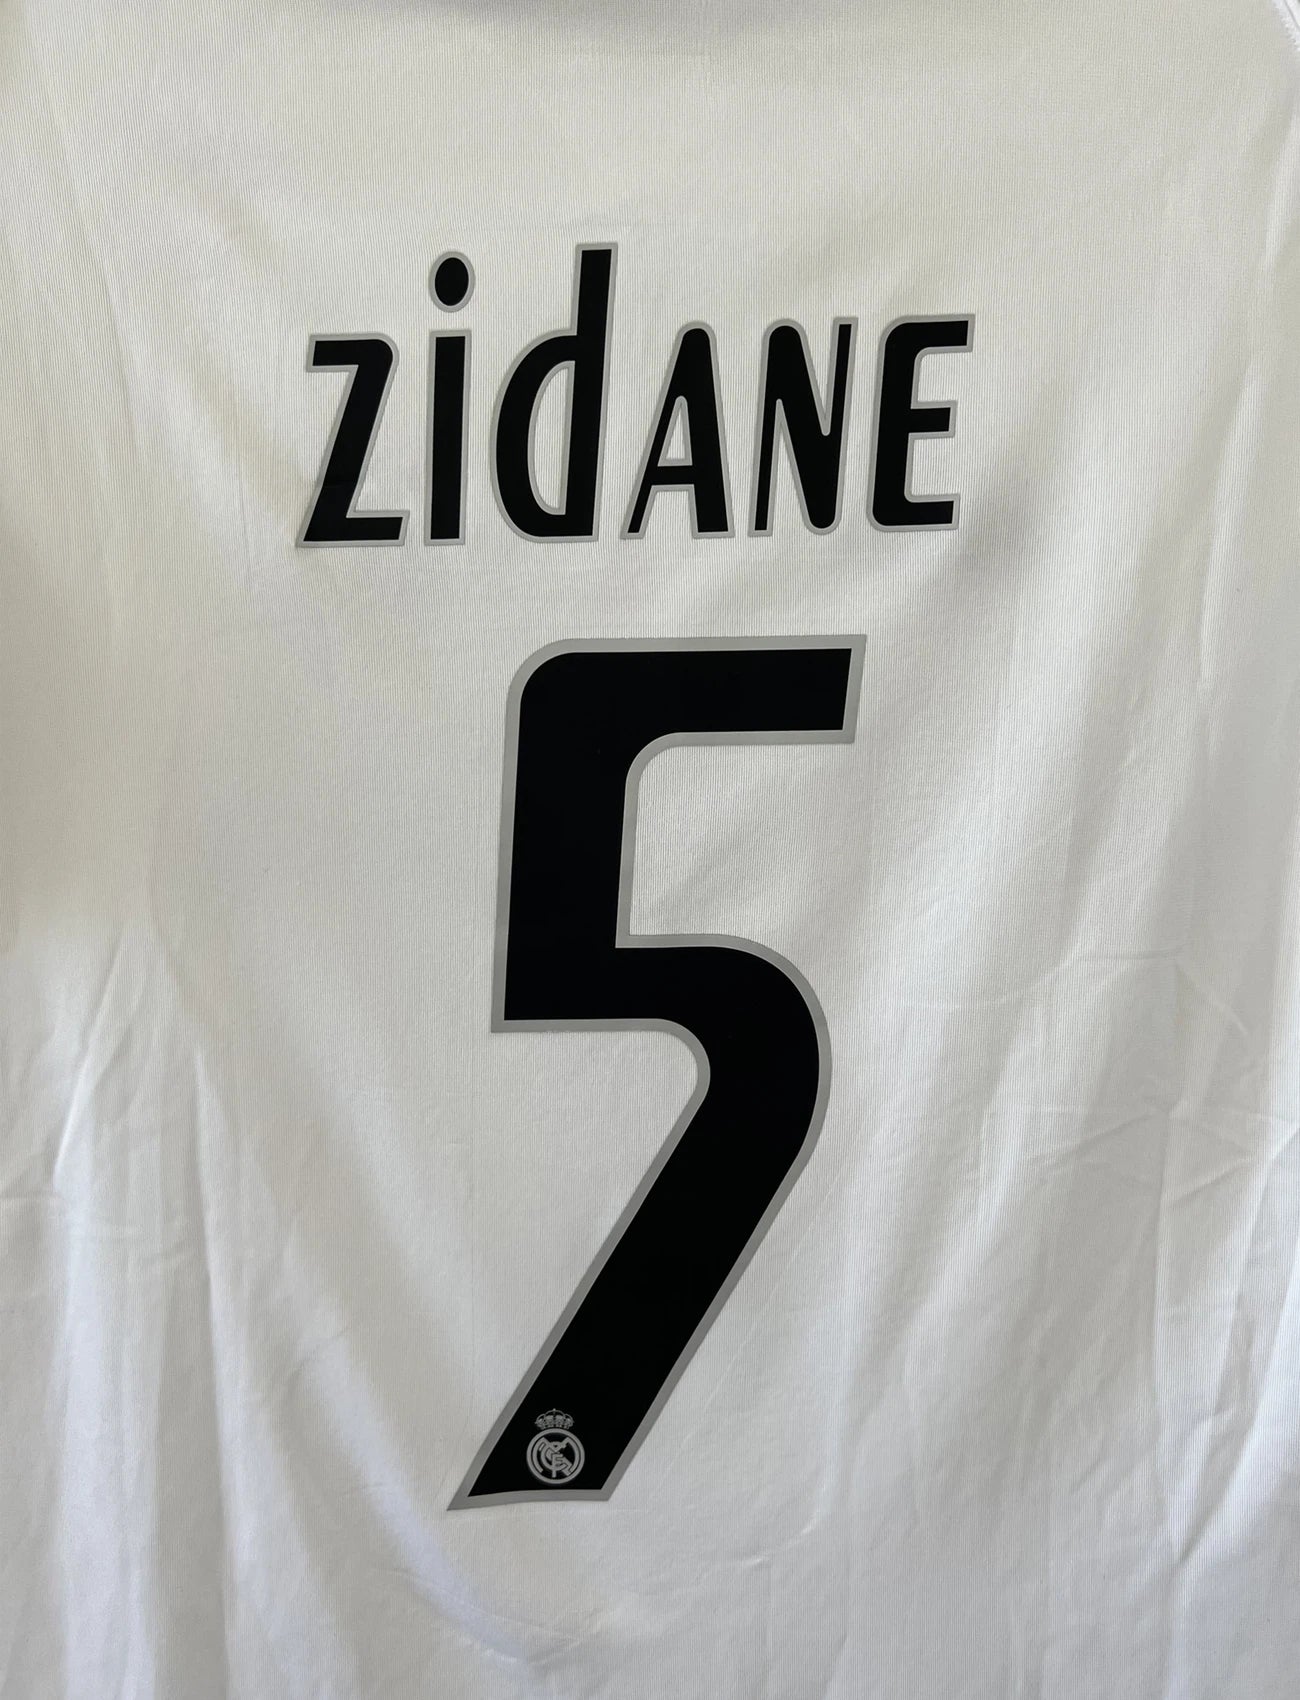 Maillot de foot vintage domicile du Real Madrid de la saison 2005/2006. Le maillot est de couleur blanc et noir. On peut retrouver l'équipementier adidas et le sponsor siemens. Le maillot est floqué du numéro 5 Zinedine Zidane. Le maillot possède l'étiquette d'authenticité avec les numéros 109879. Il s'agit d'un maillot authentique d'époque.